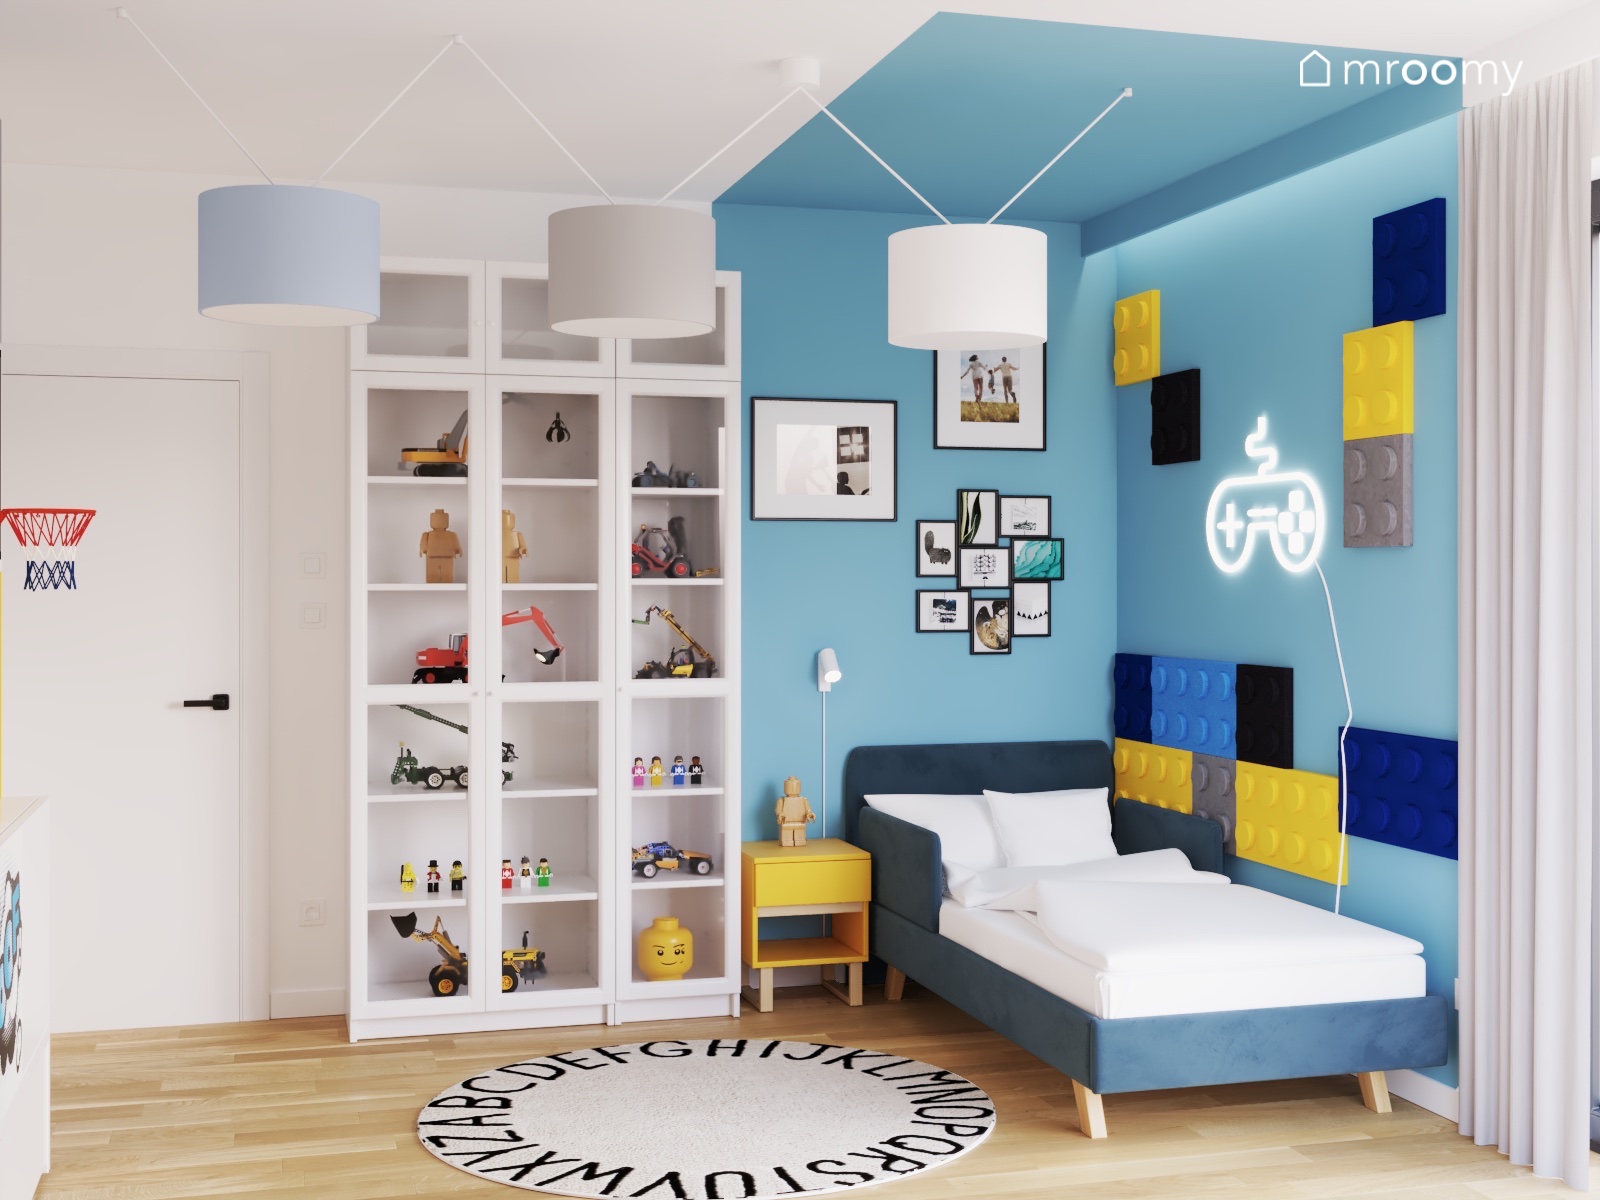 Łóżko w pokoju chłopca a przy nim śpanele ścienne i niebieski kolor ściany z sufitem